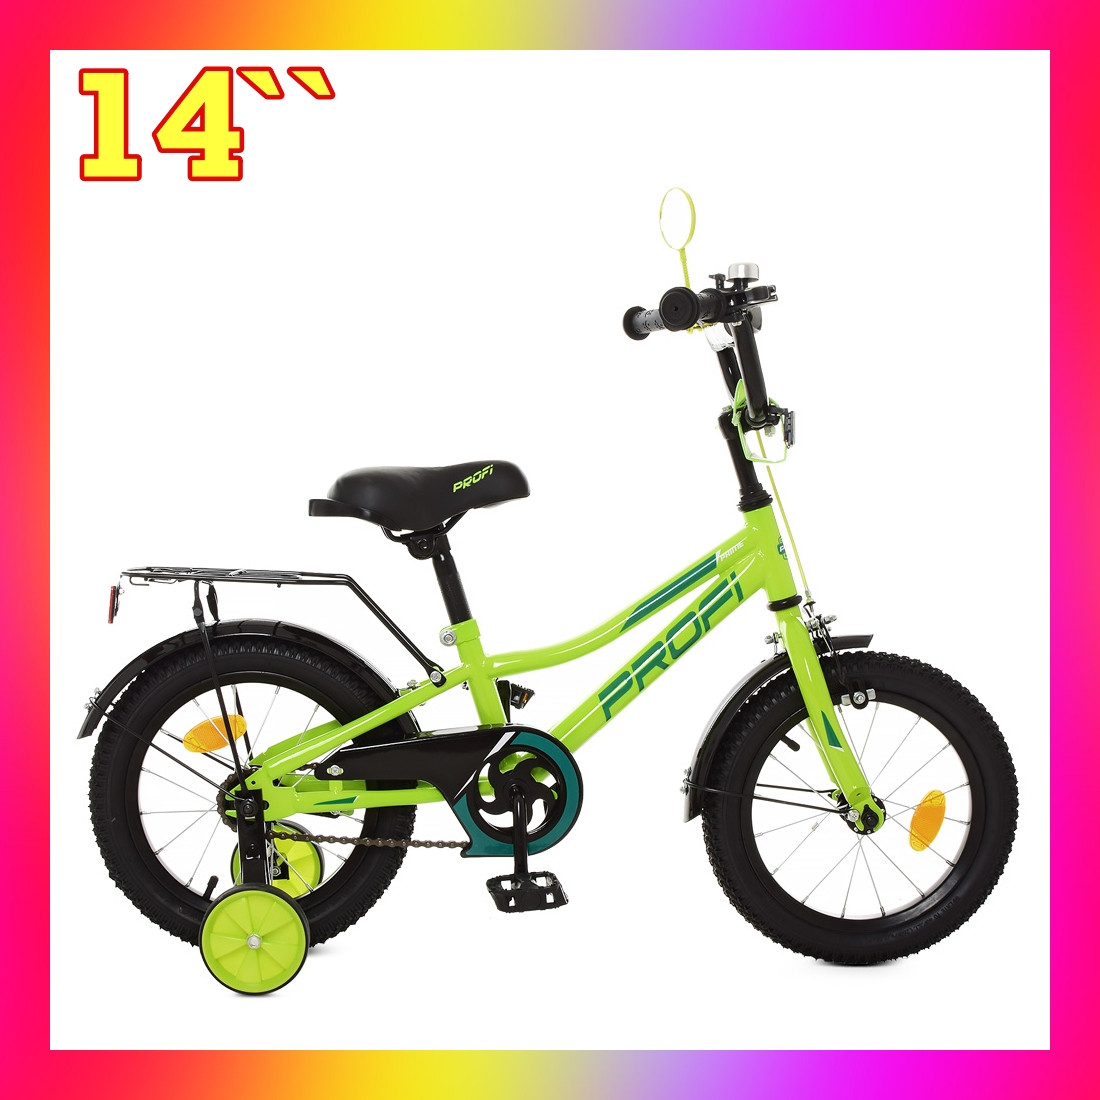 Дитячий двоколісний велосипед Profi PRIME 14 дюймів, 14225 салатовий. Для дітей 3-5 років